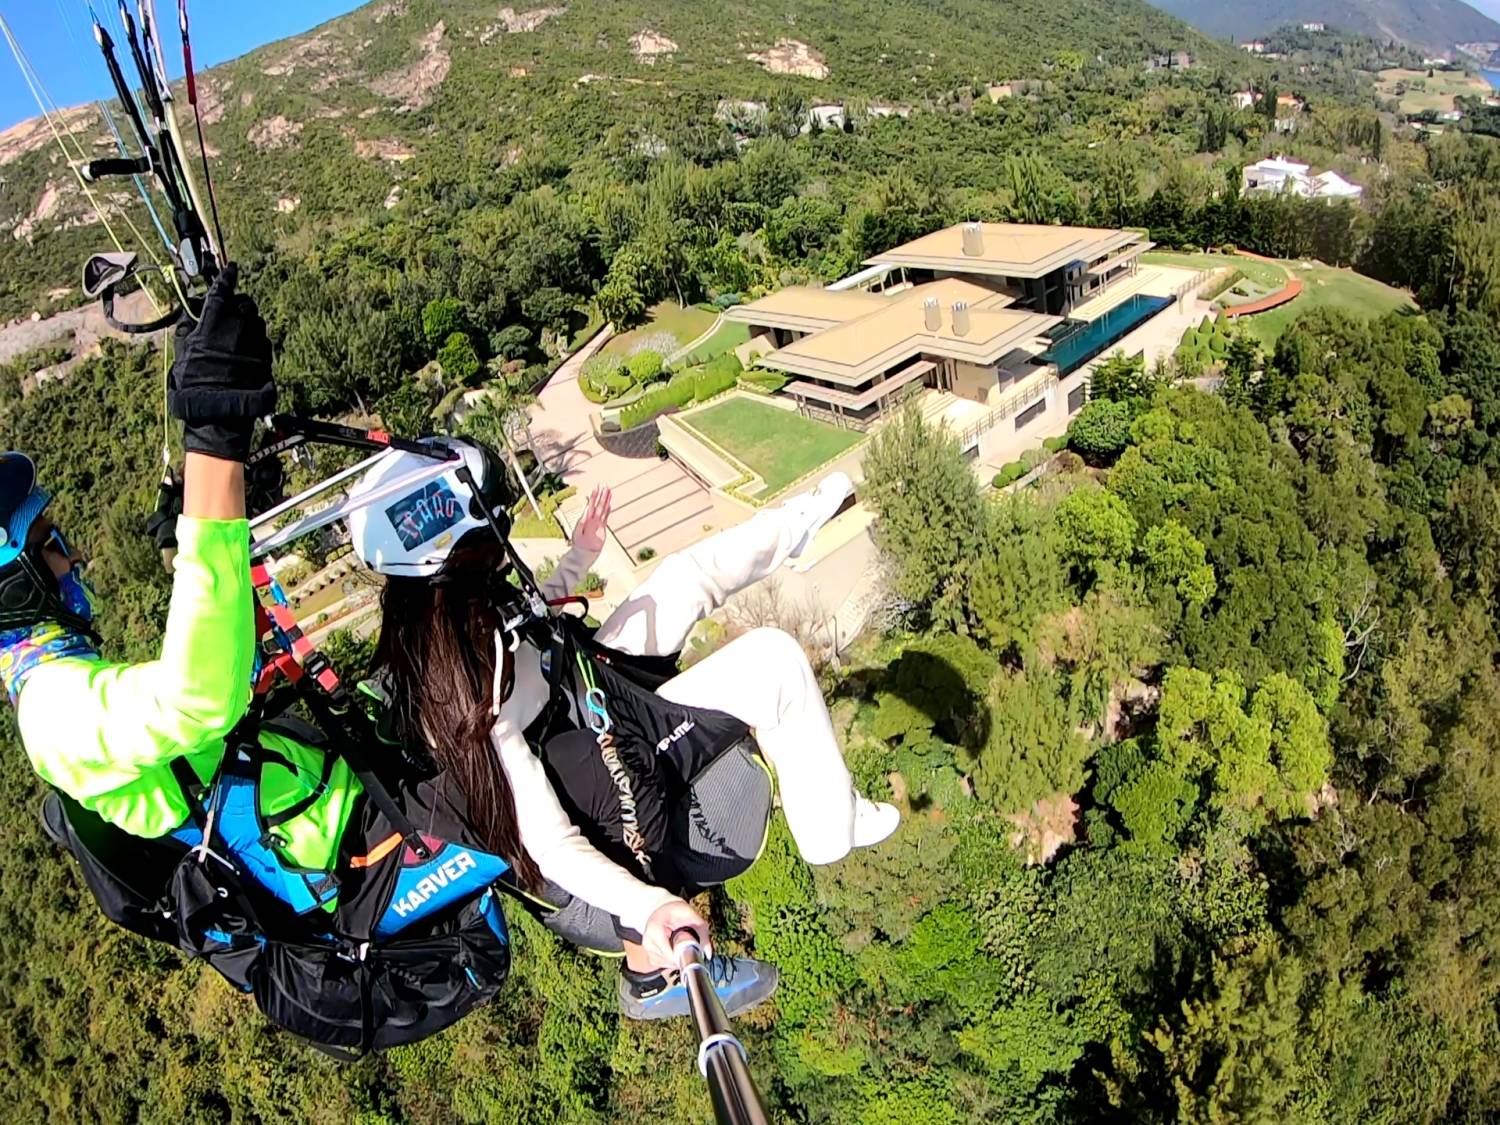 X Fly Paragliding 【特別體驗之選】香港滑翔傘體驗飛行 Tandem paragliding experience trial 19